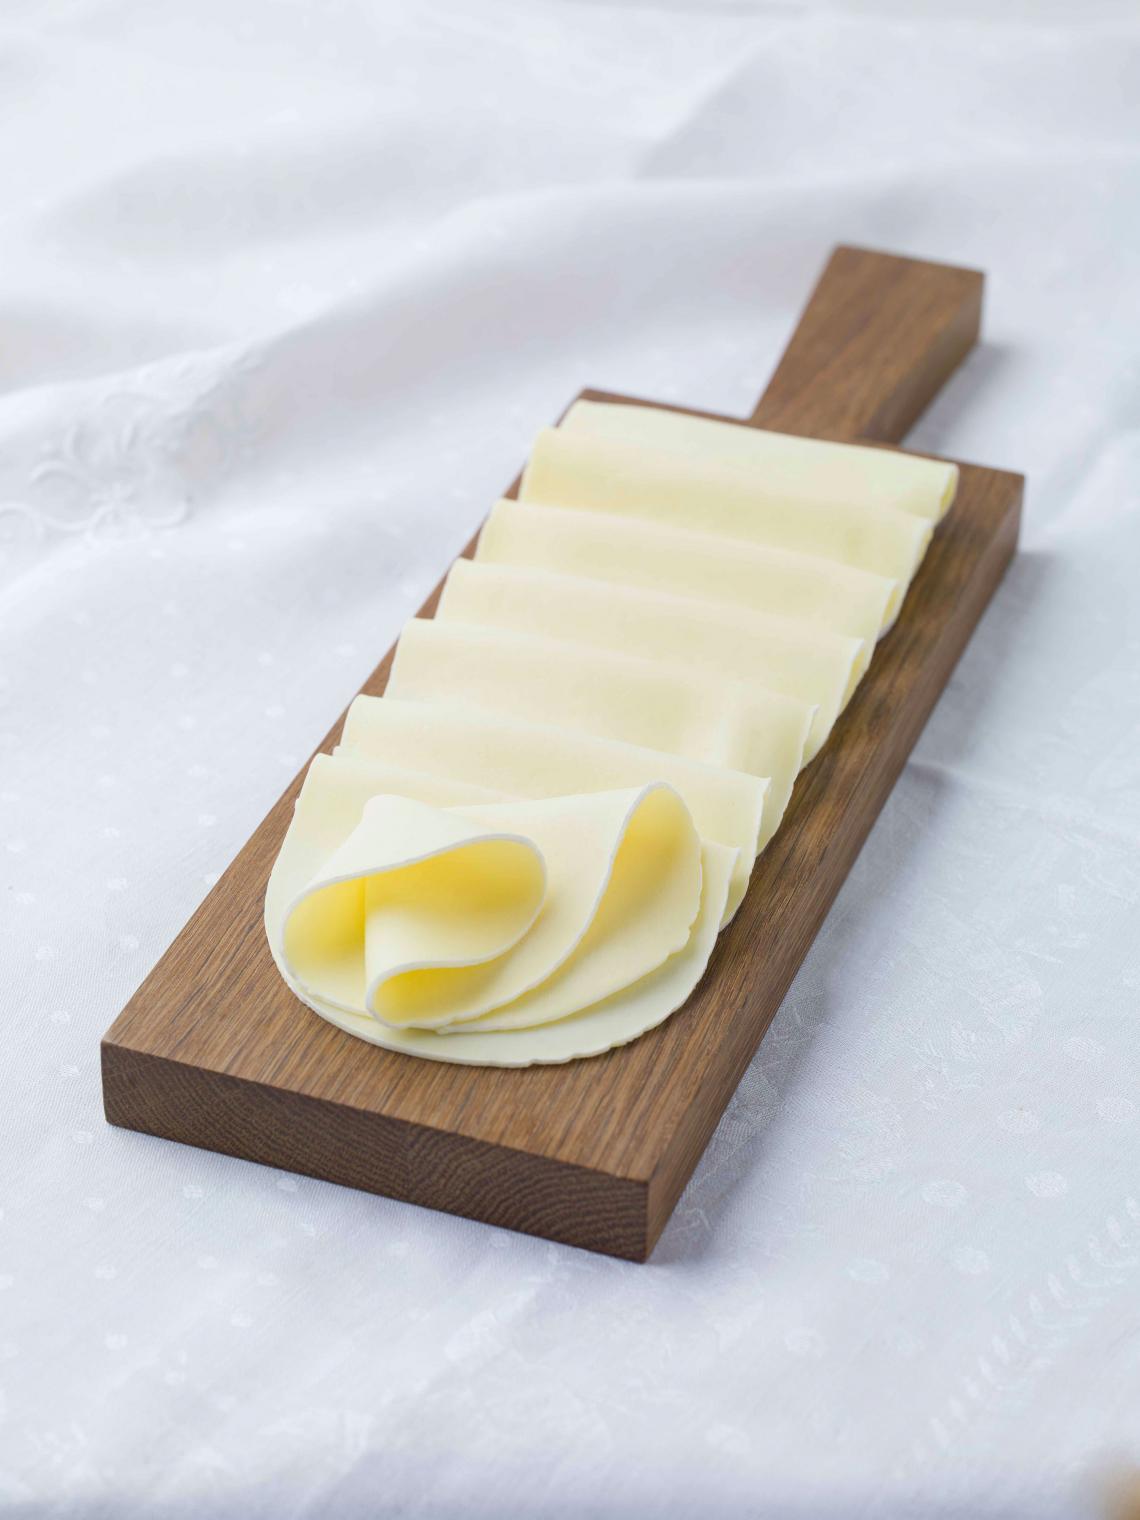 ILE DE FRANCE® Tranches de Brie on a plate